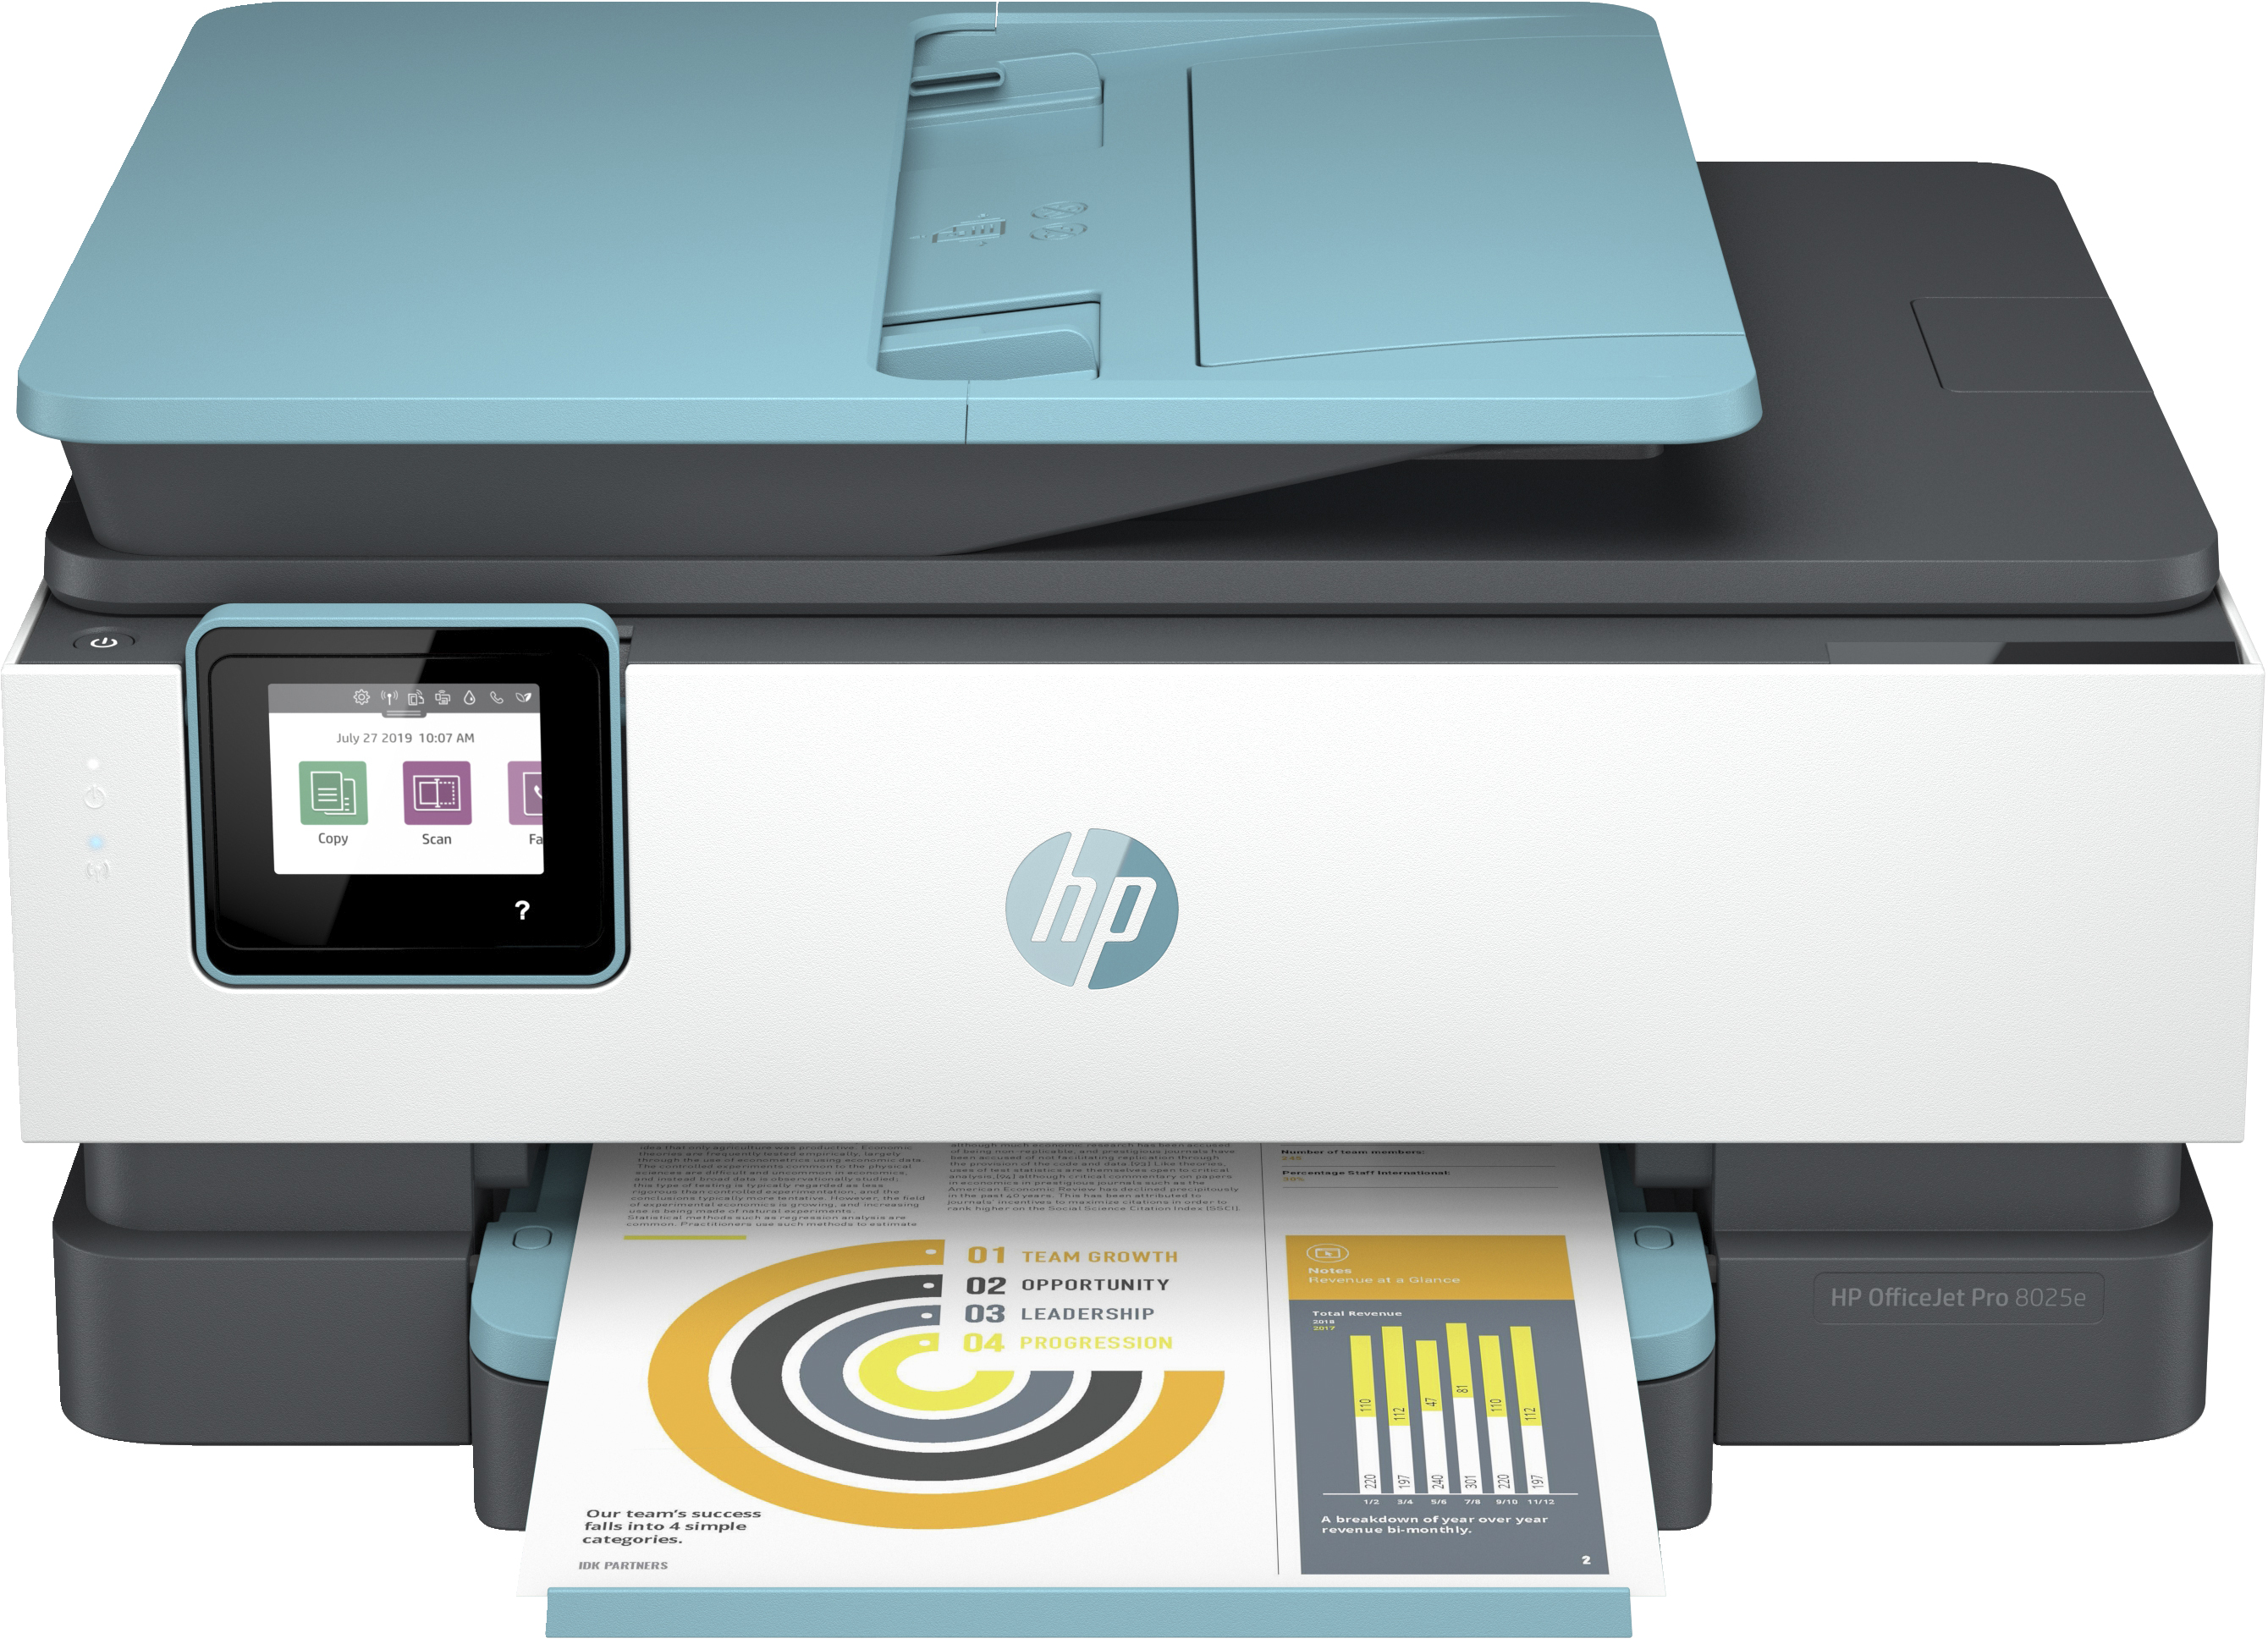 HP OfficeJet Pro HP 8025e Allt-i-ett-skrivare, Färg, Skrivare för Hemma, Skriv ut, kopiera, skanna, fax, HP+; Berättigad till HP Instant Ink; Automatisk dokumentmatare; Dubbelsidig utskrift